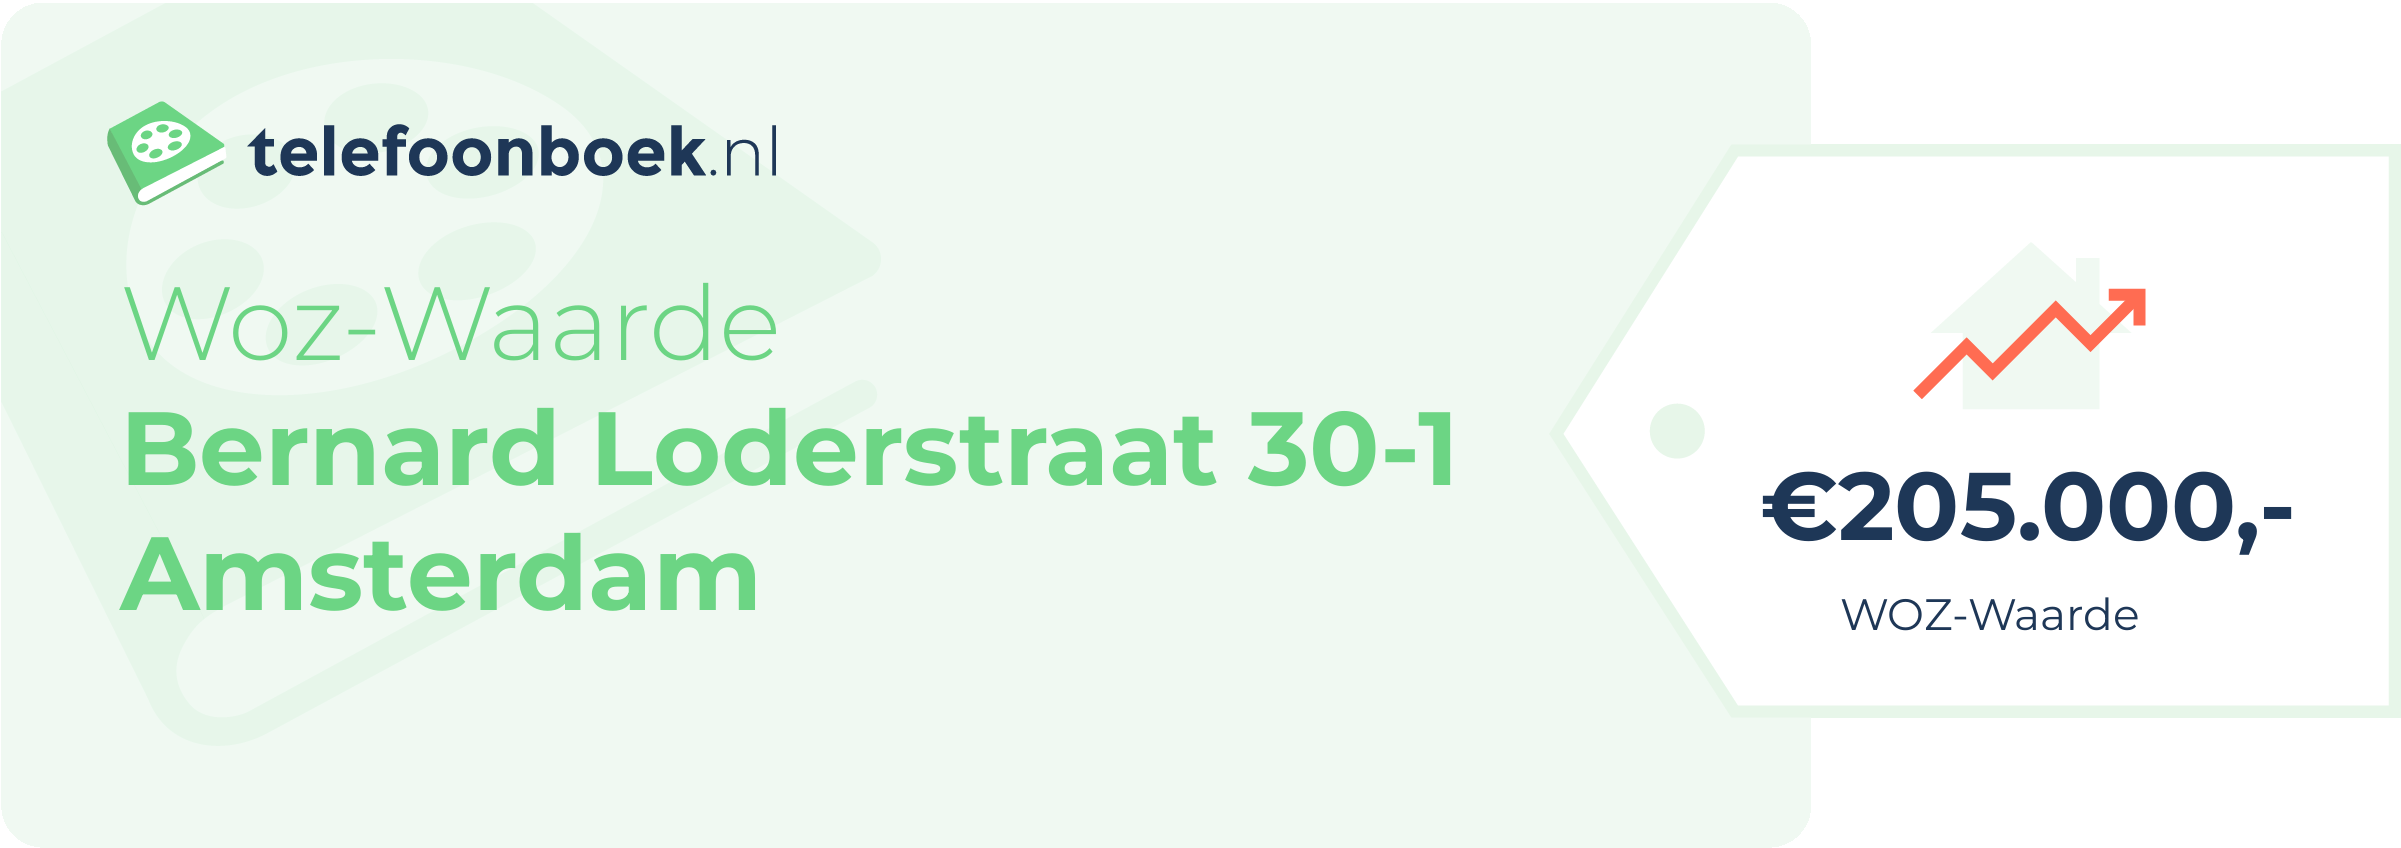 WOZ-waarde Bernard Loderstraat 30-1 Amsterdam